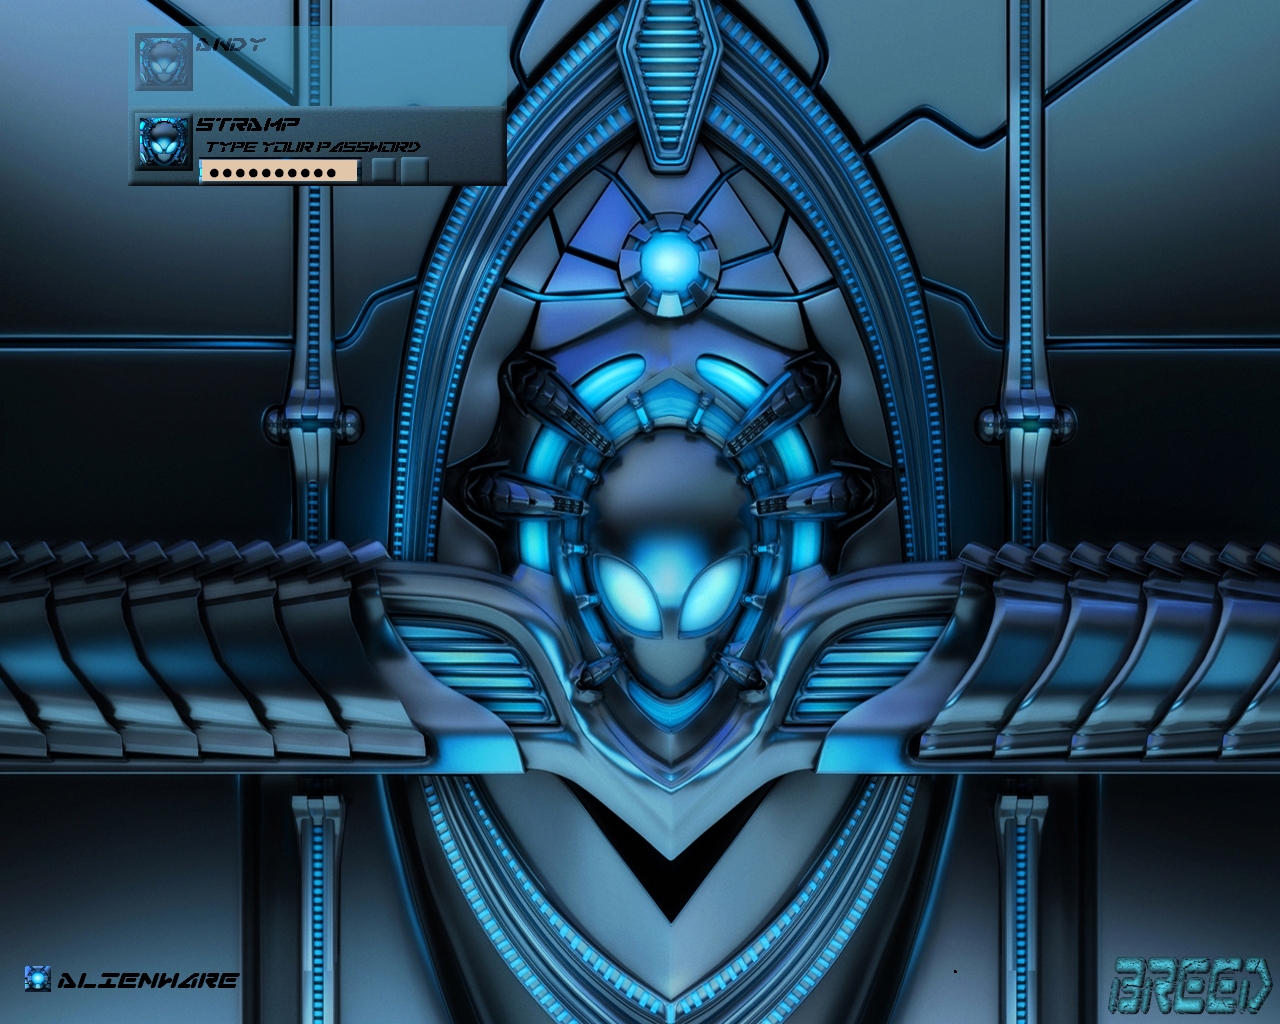 46+] Alienware Animated Wallpaper